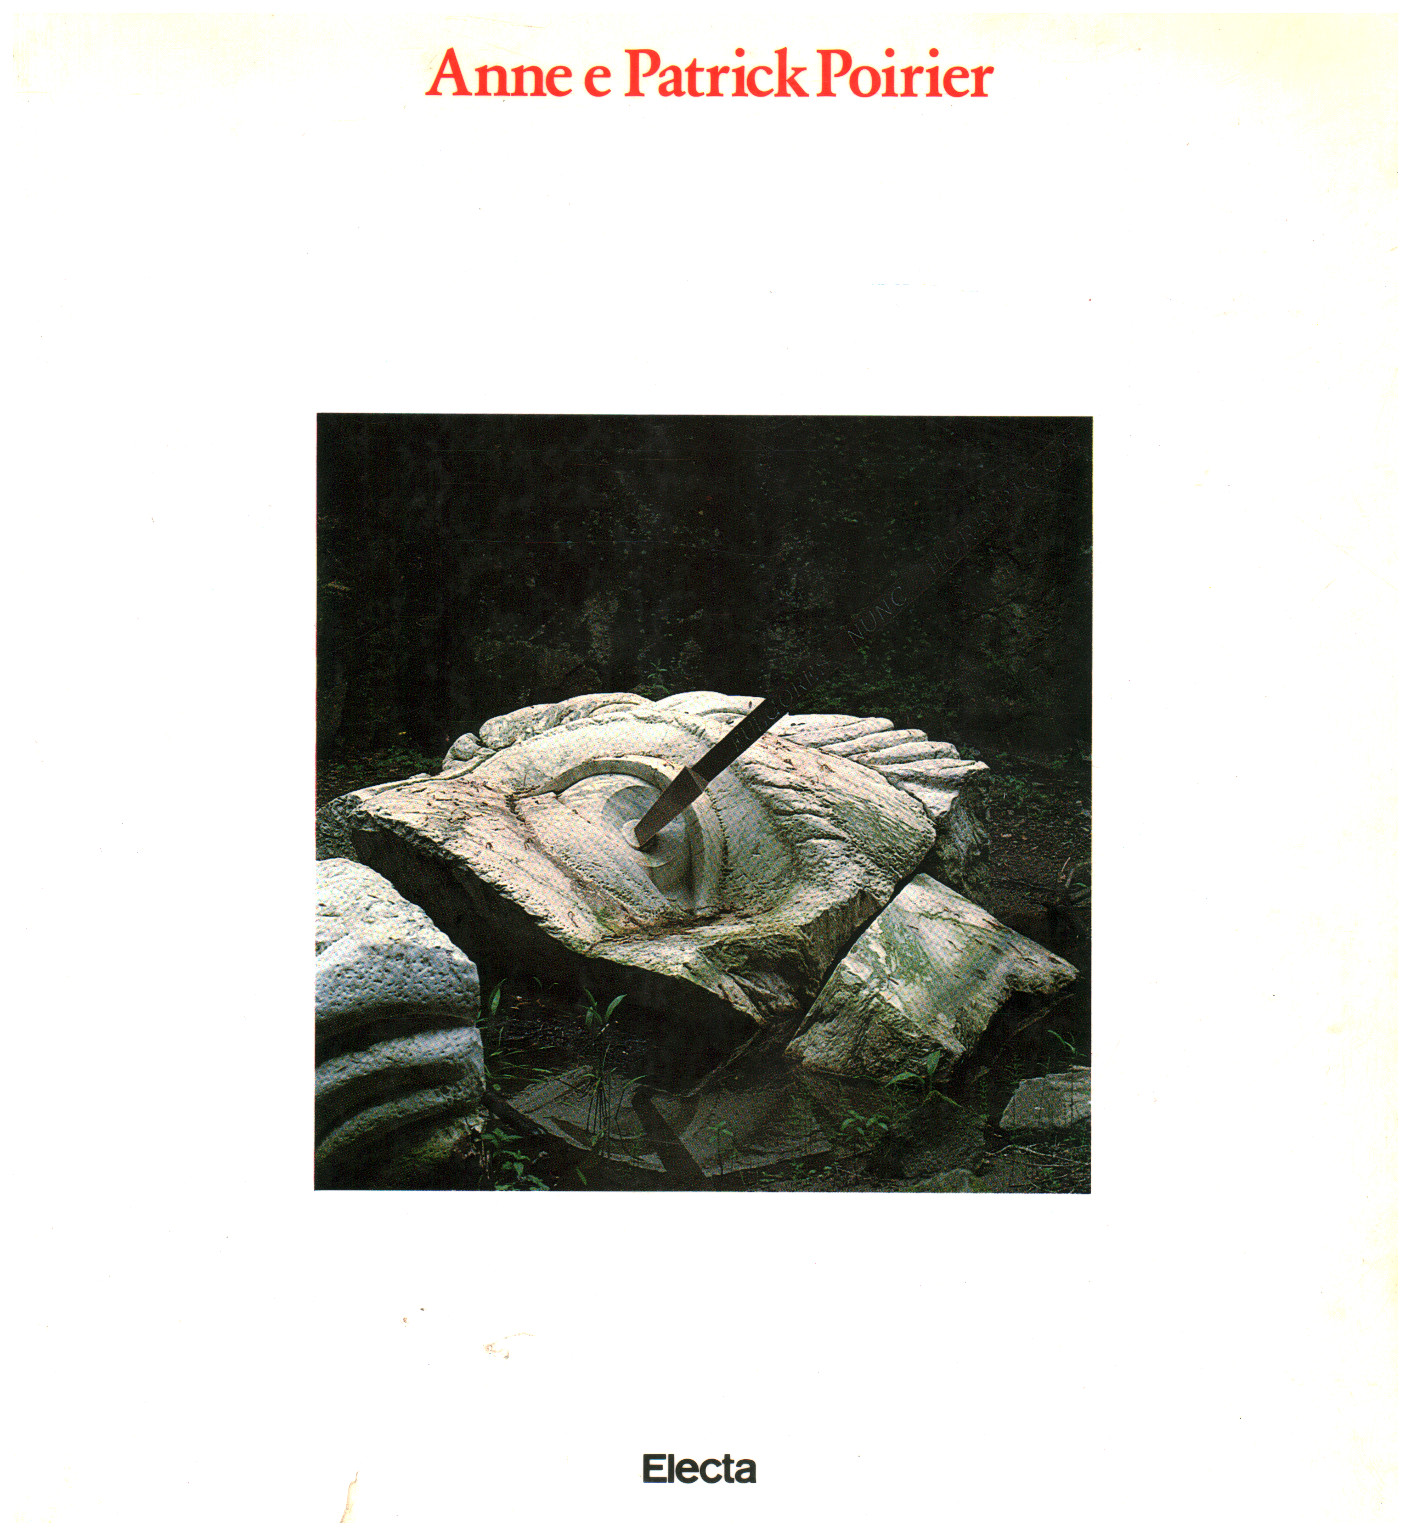 Anne und Patrick Poirier: Architektur und mythologie, s.zu.